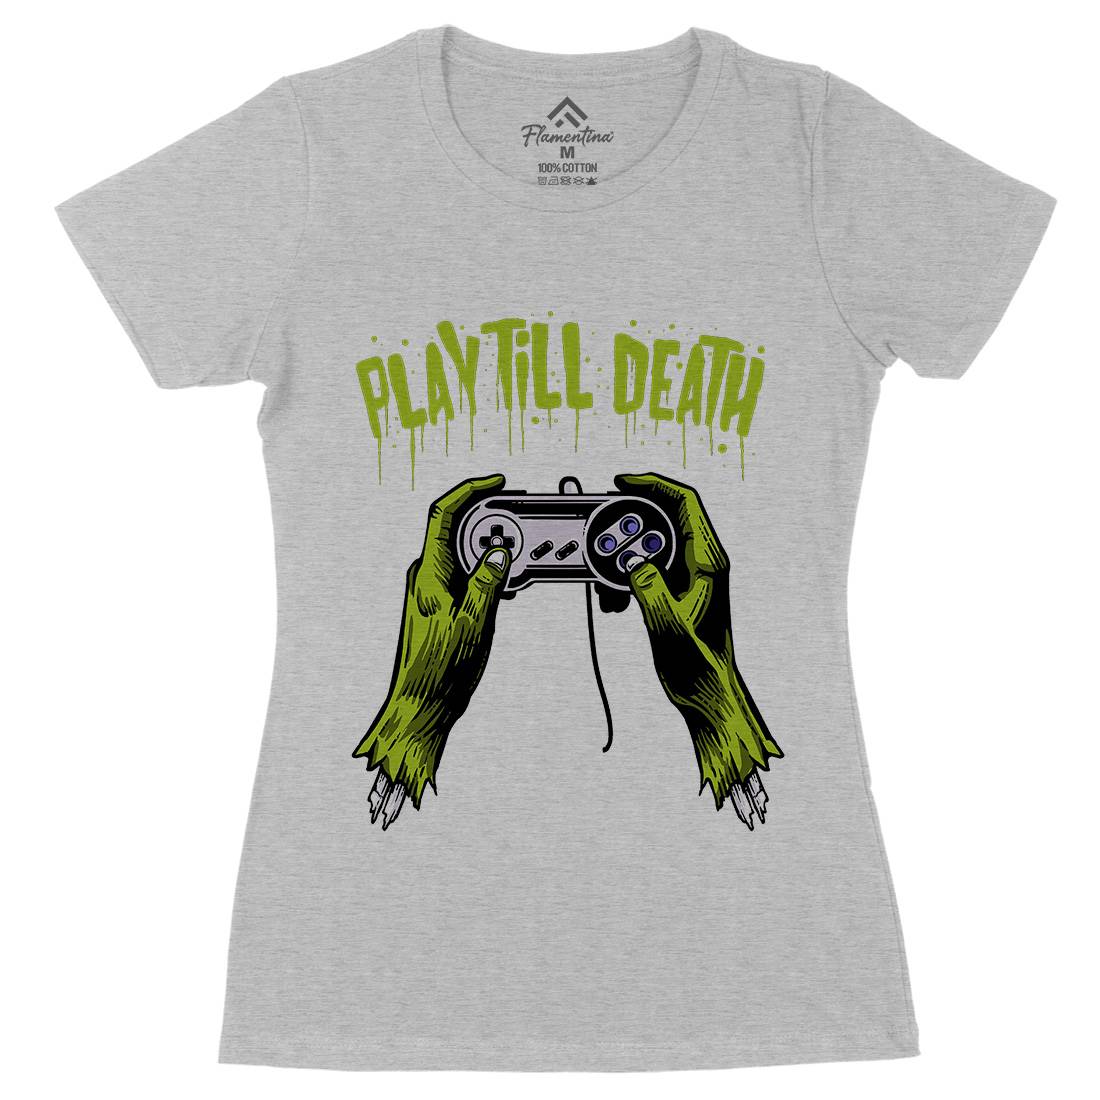 Play Till Death Womens Organic Crew Neck T-Shirt Geek A561